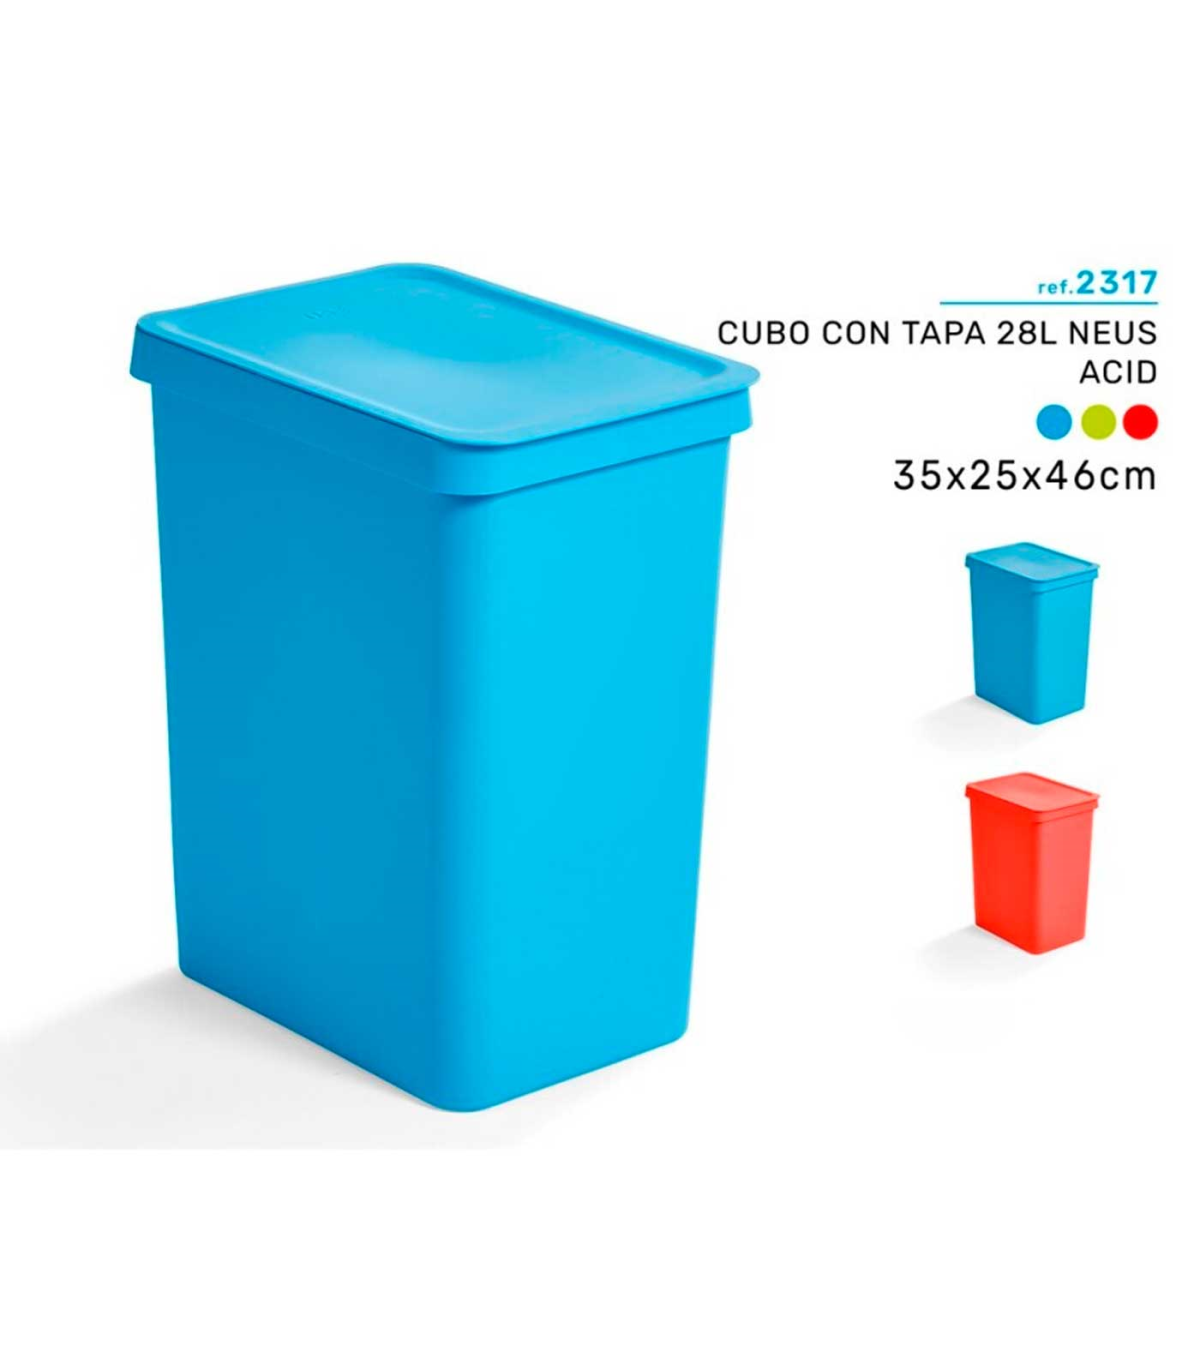 Cubo basura rectangular con tapa 26 l - Ferretería Campollano